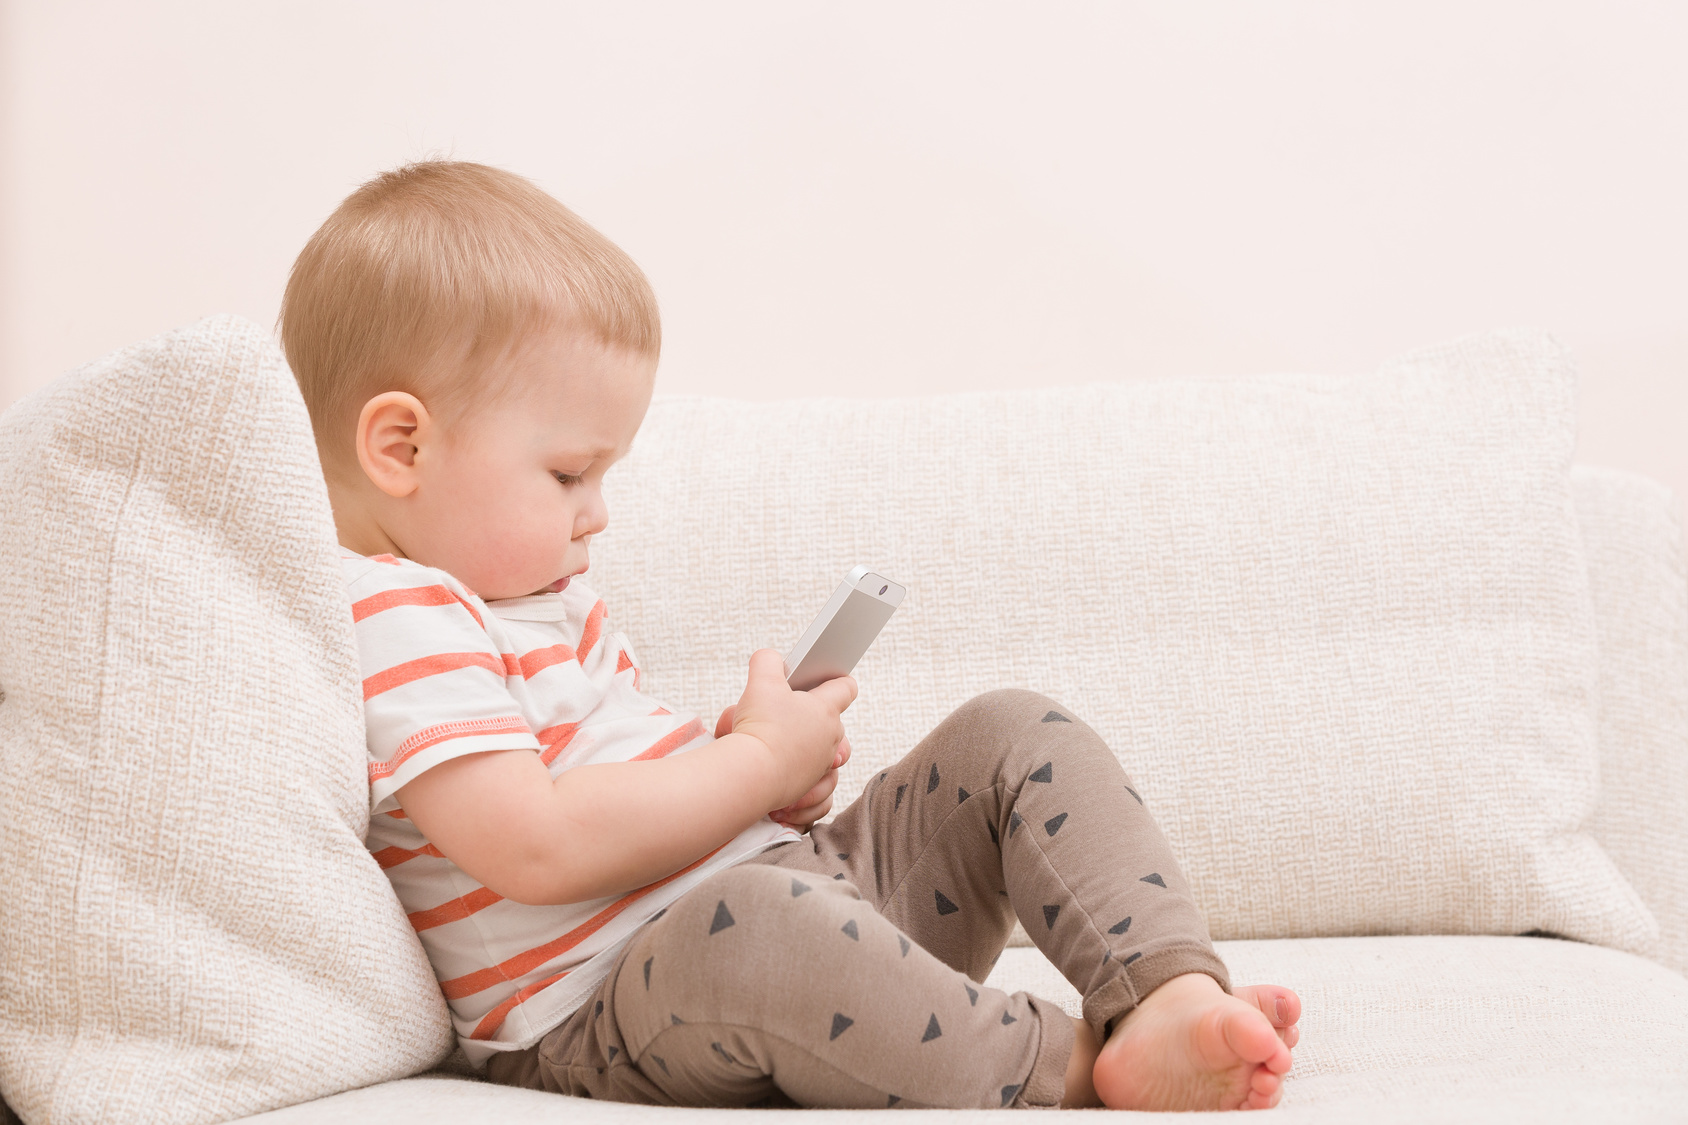 Erschreckend: Das passiert wenn Kleinkinder schon mit Smartphones spielen